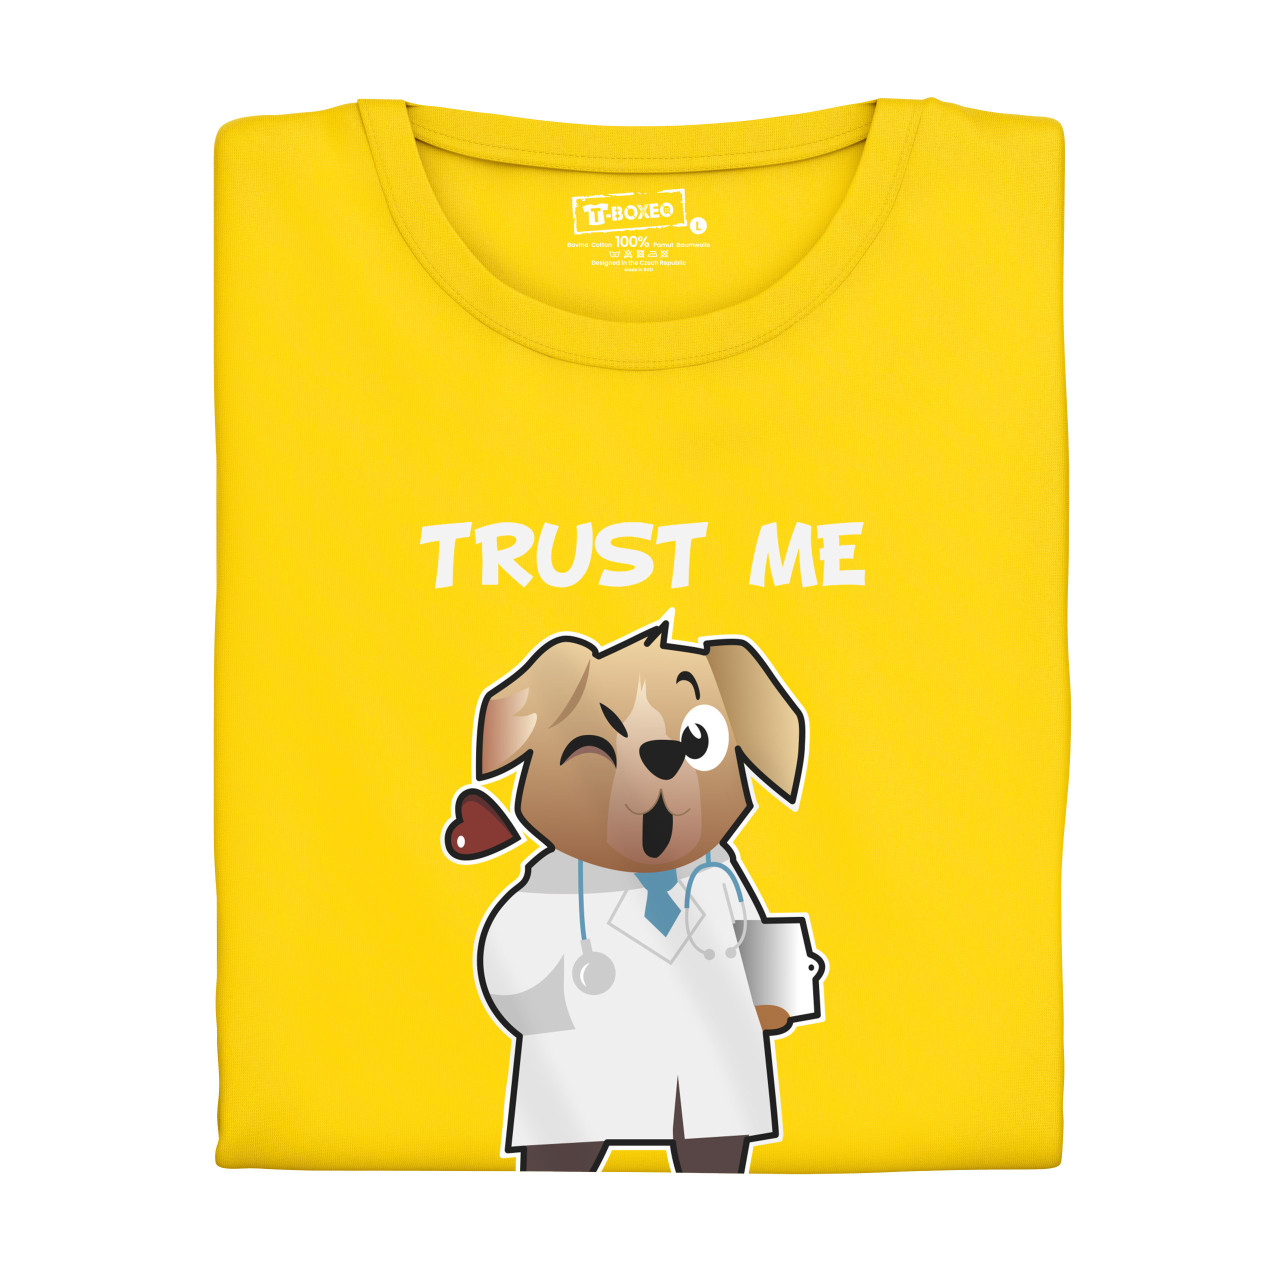 Pánské tričko s potiskem “Trust me, I´m Doctor”